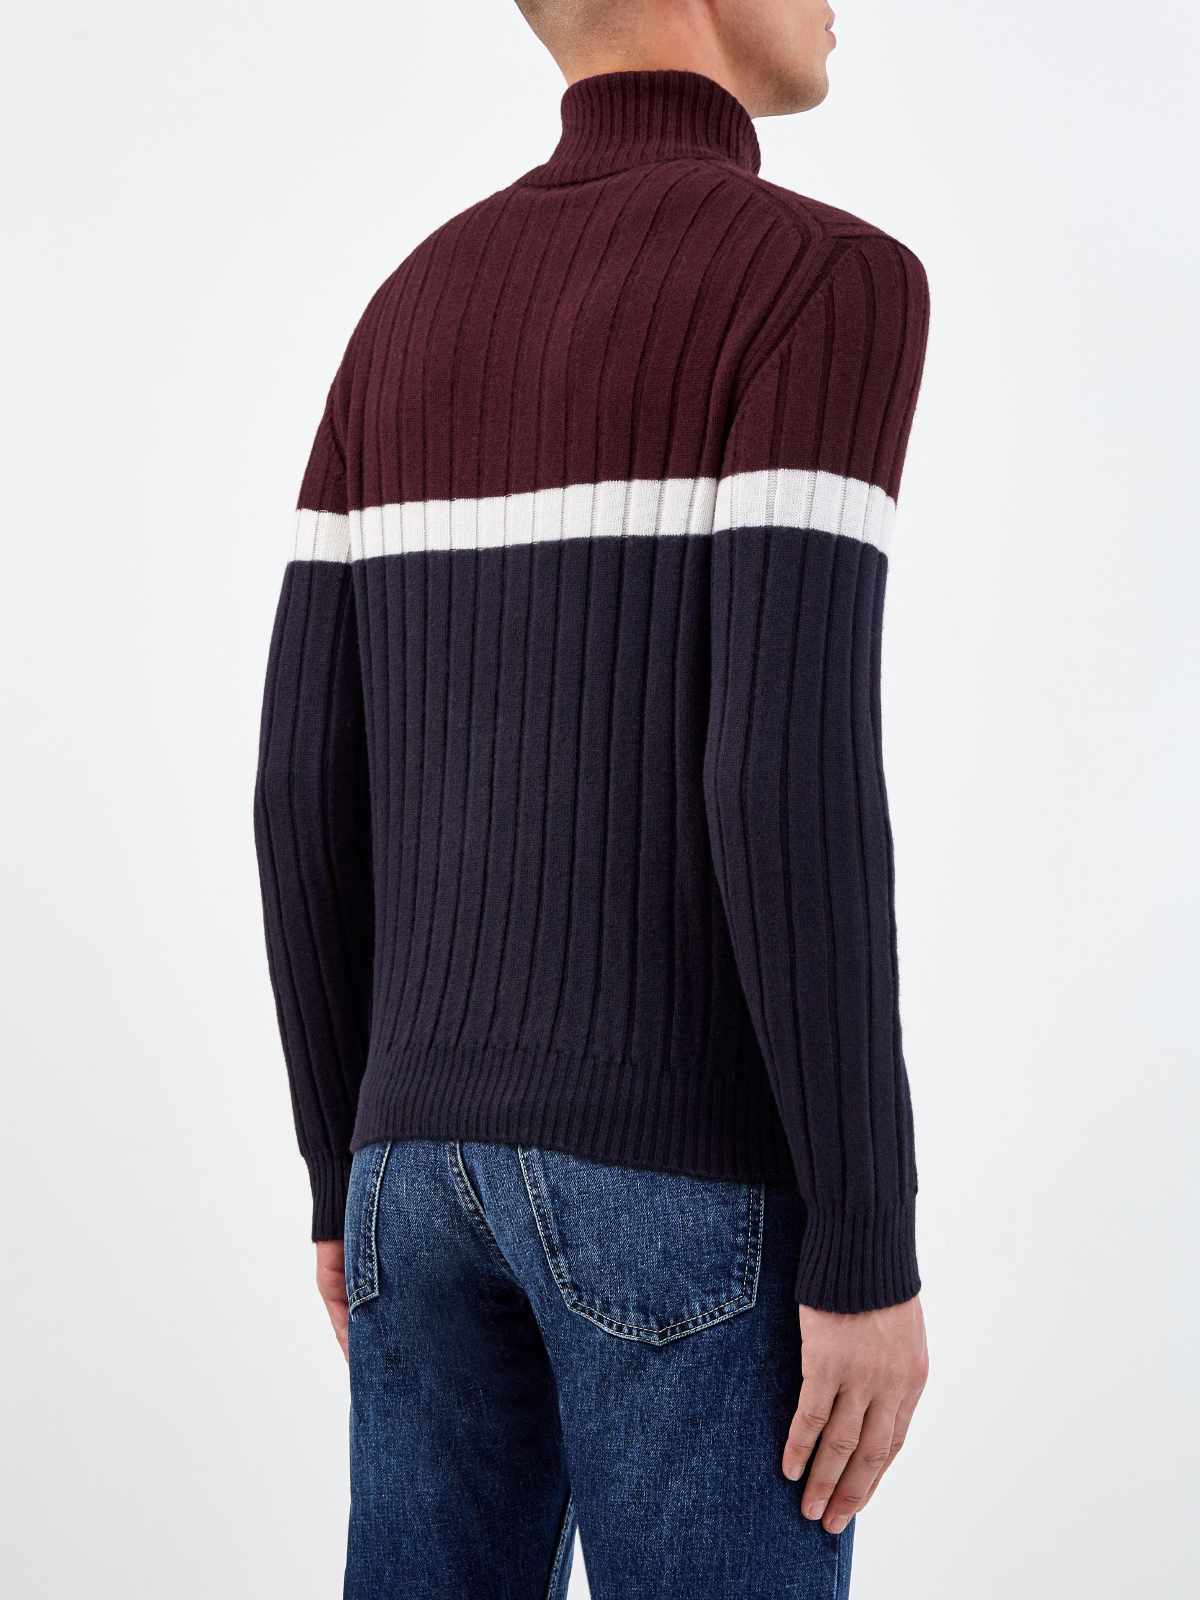 Шерстяной свитер с отделкой в стиле colorblock ELEVENTY, цвет мульти, размер 46;48;50 - фото 4